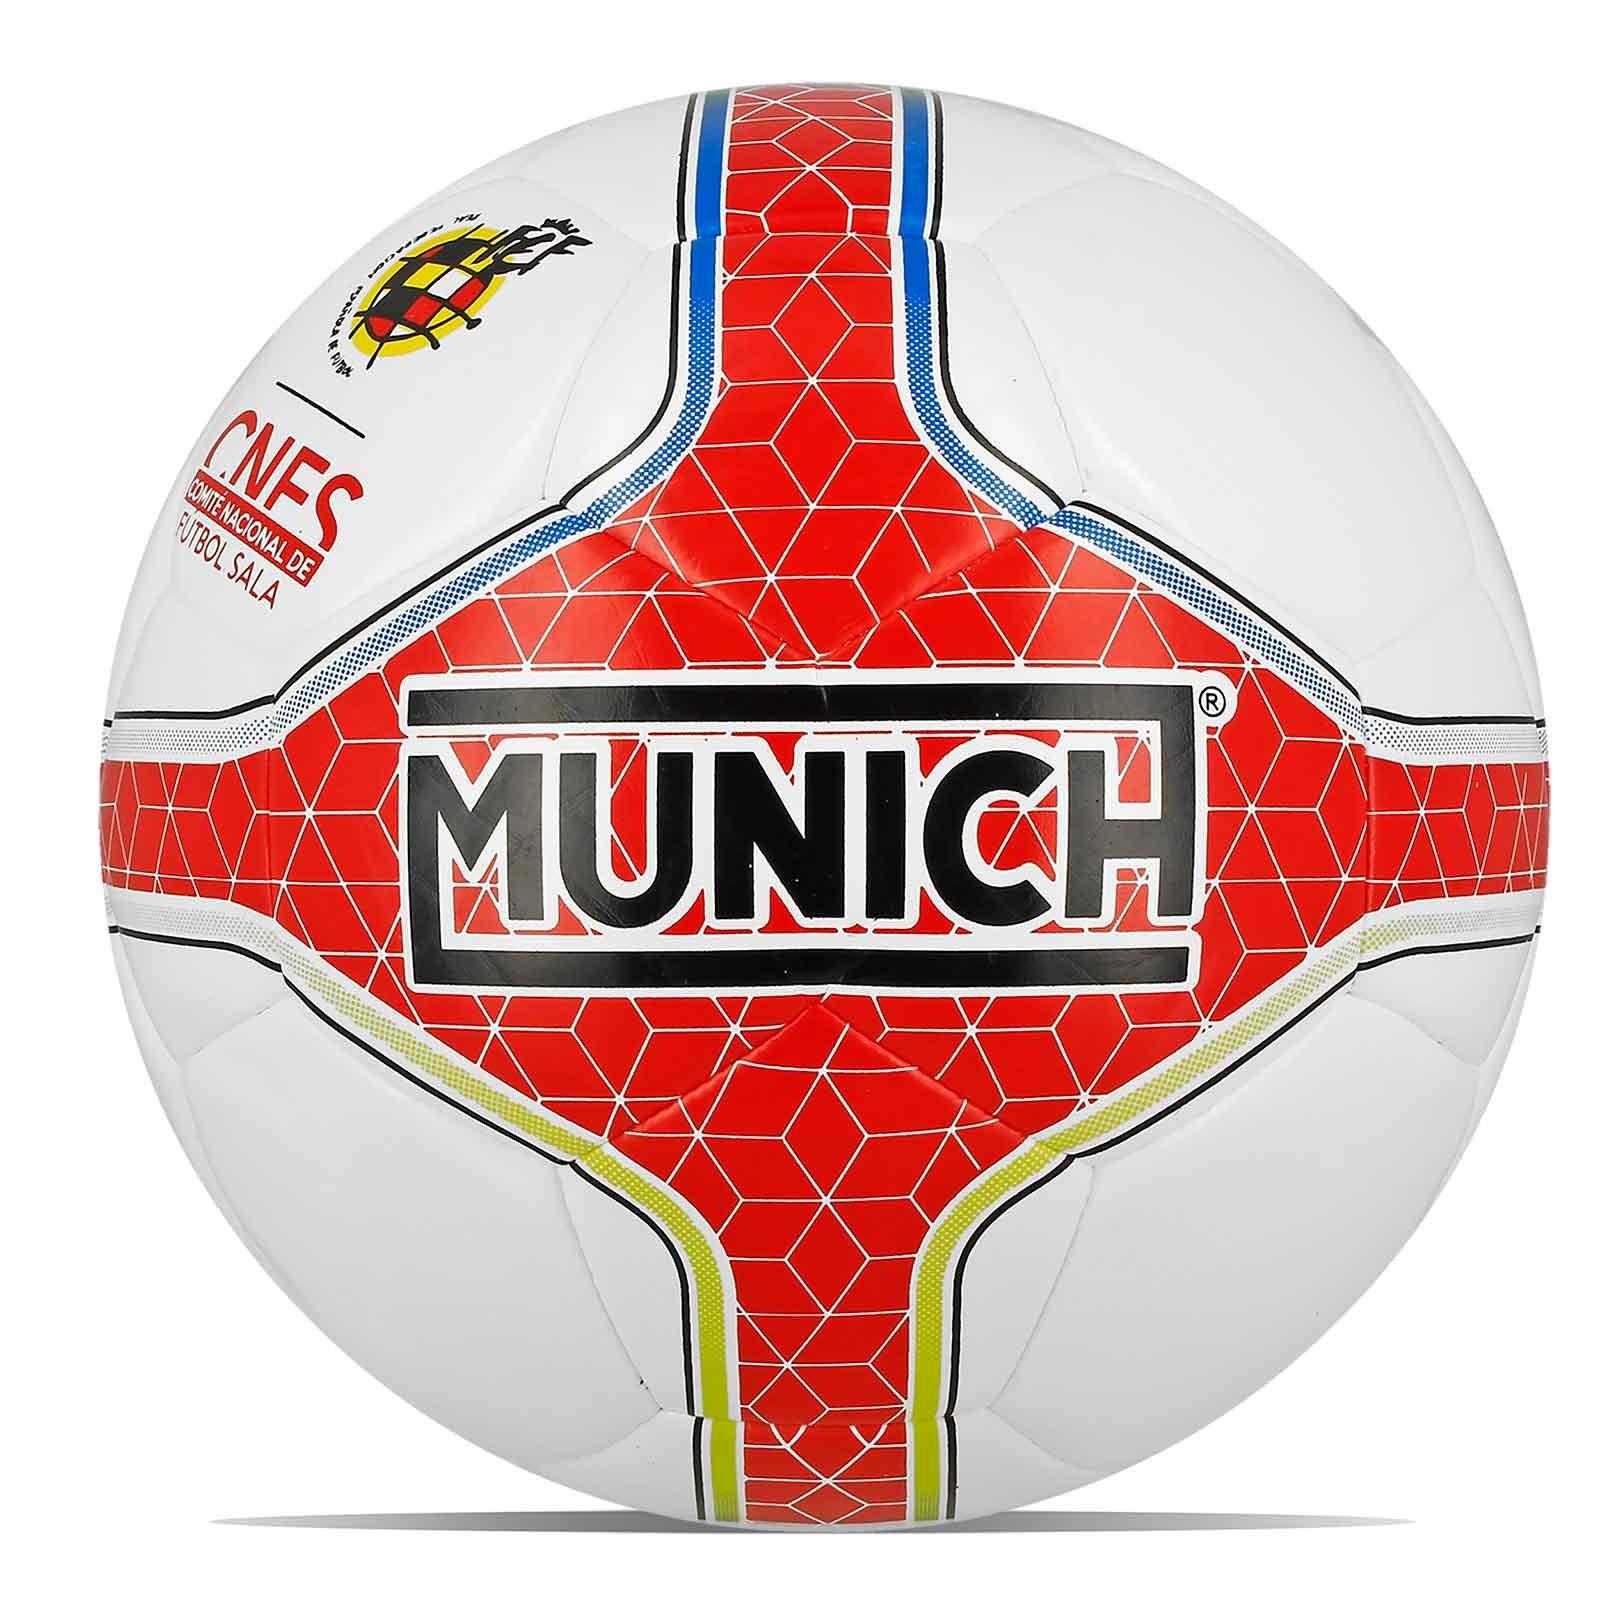 Federación Riojana de Fútbol-Balón Oficial Munich Fútbol Sala 18/19